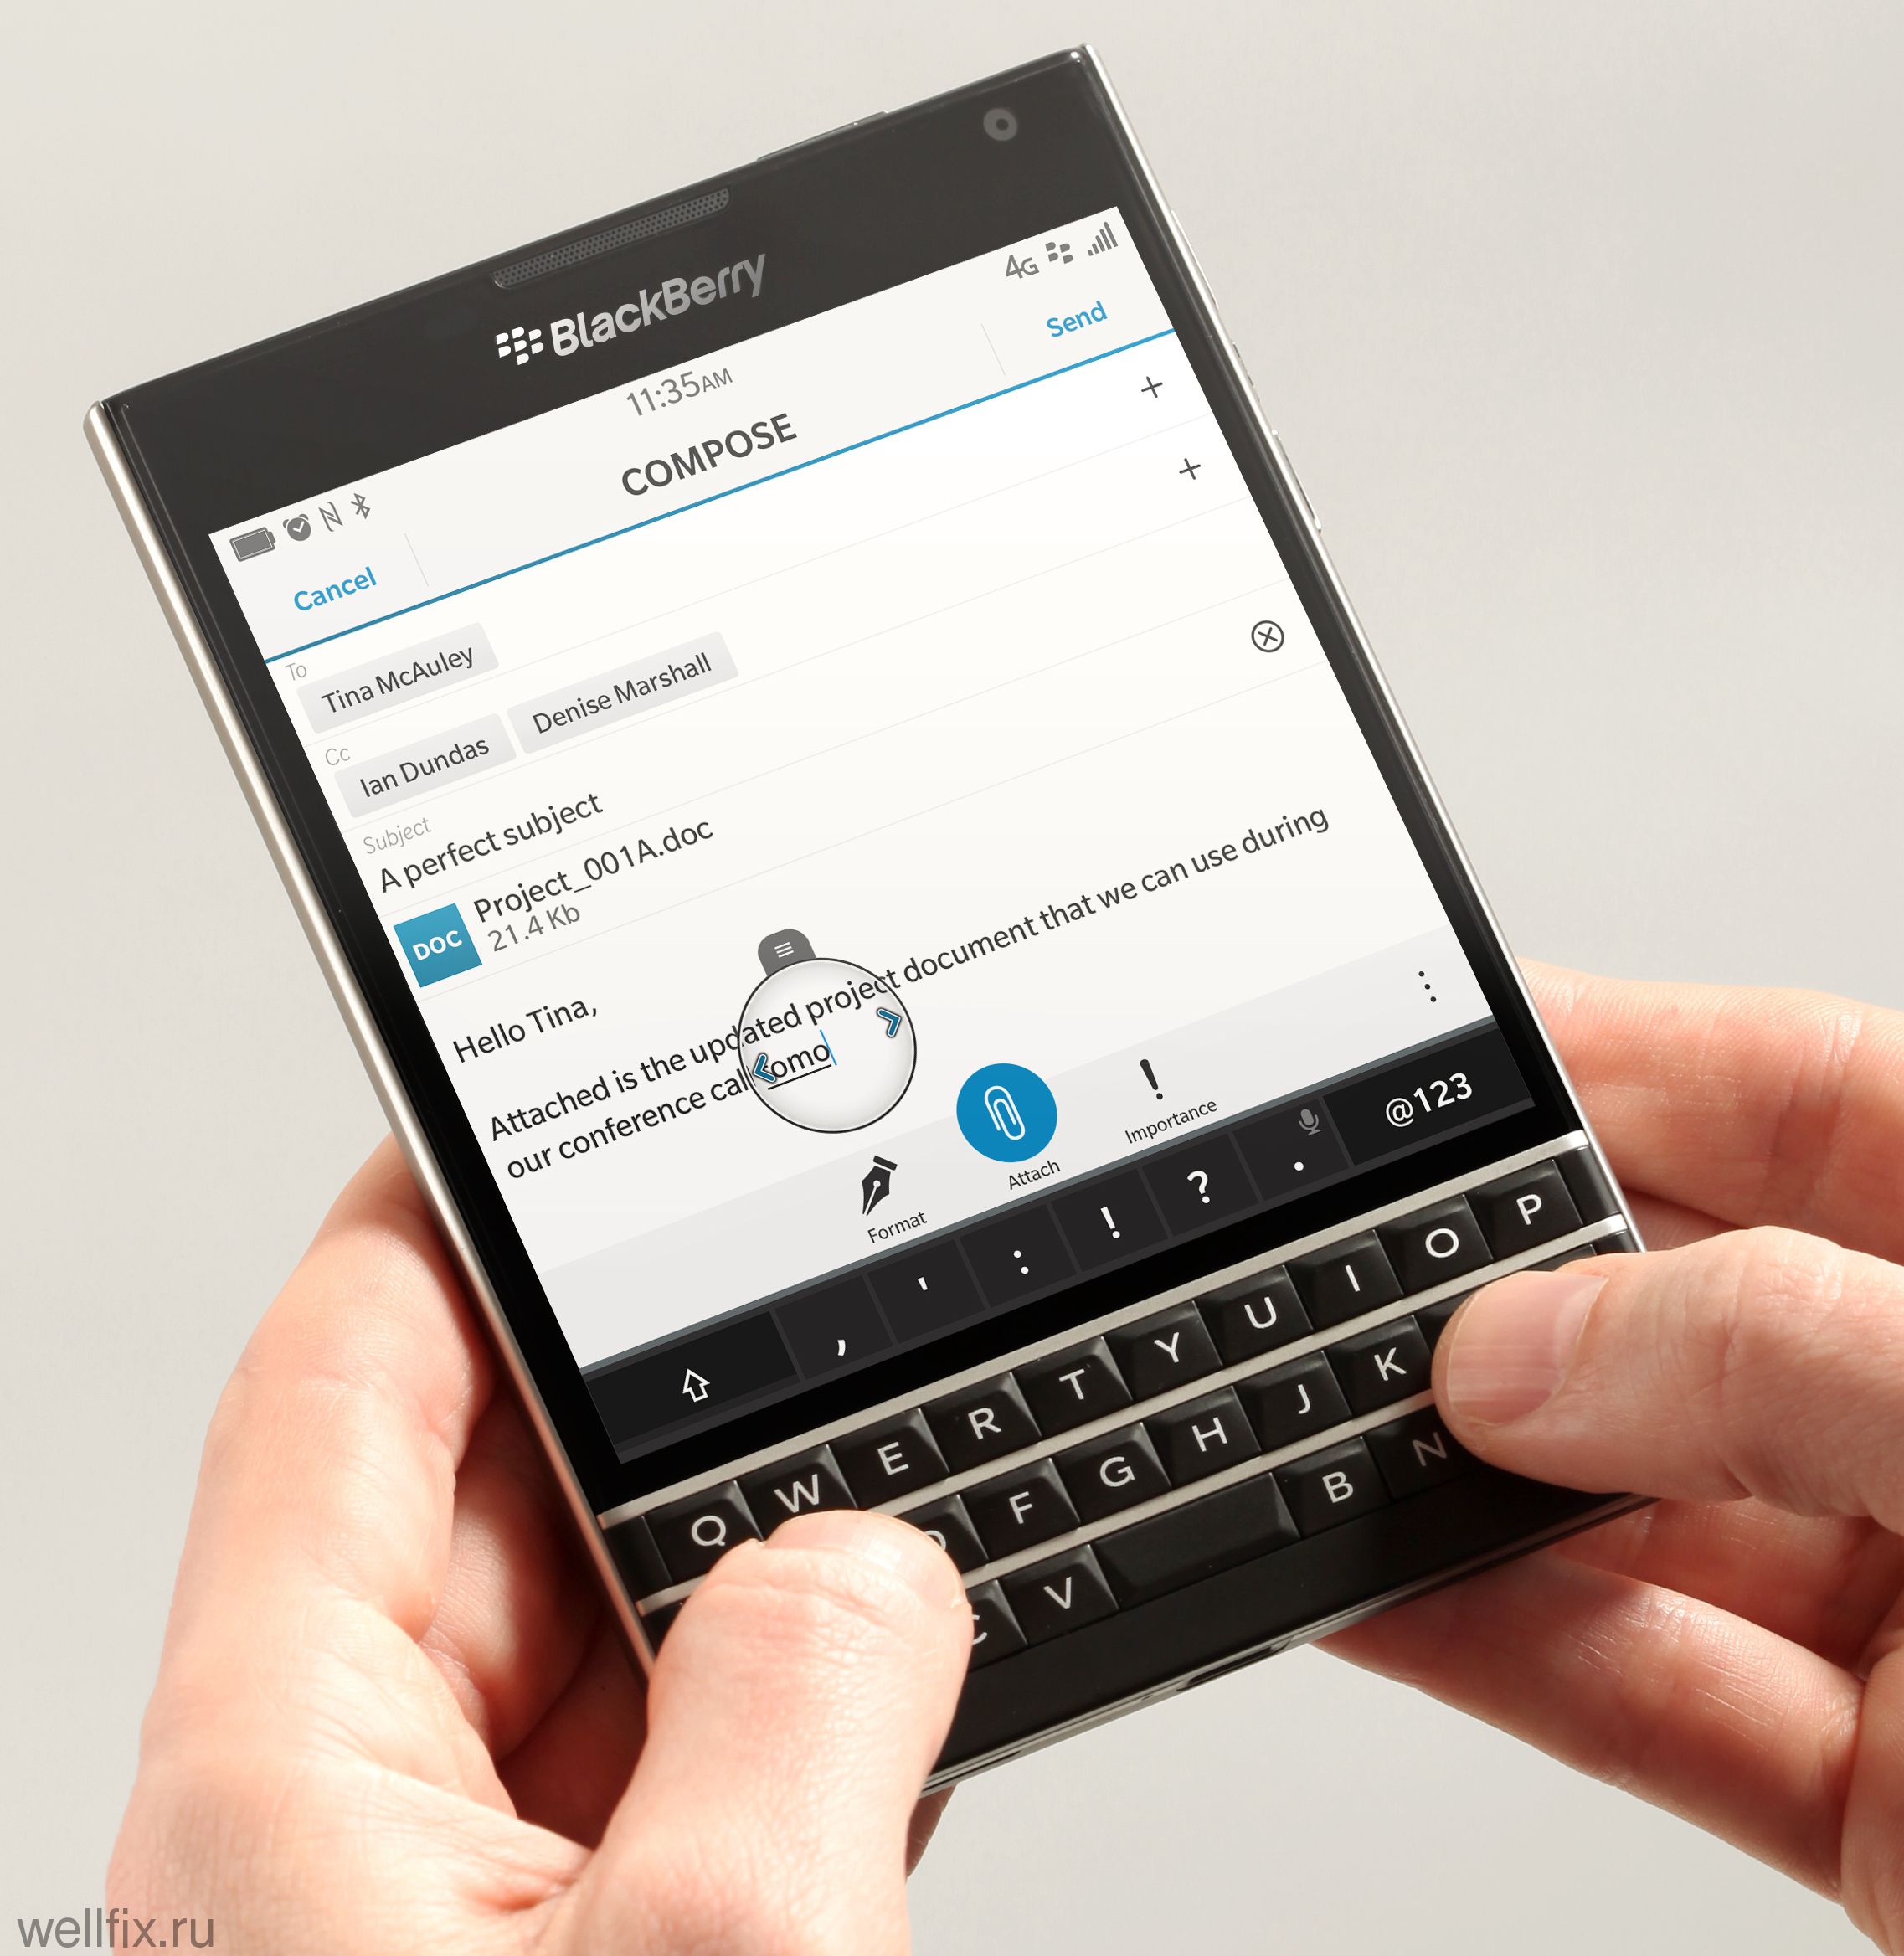 BlackBerry не расстается с идеей выпуска новых смартфонов на собственной платформе